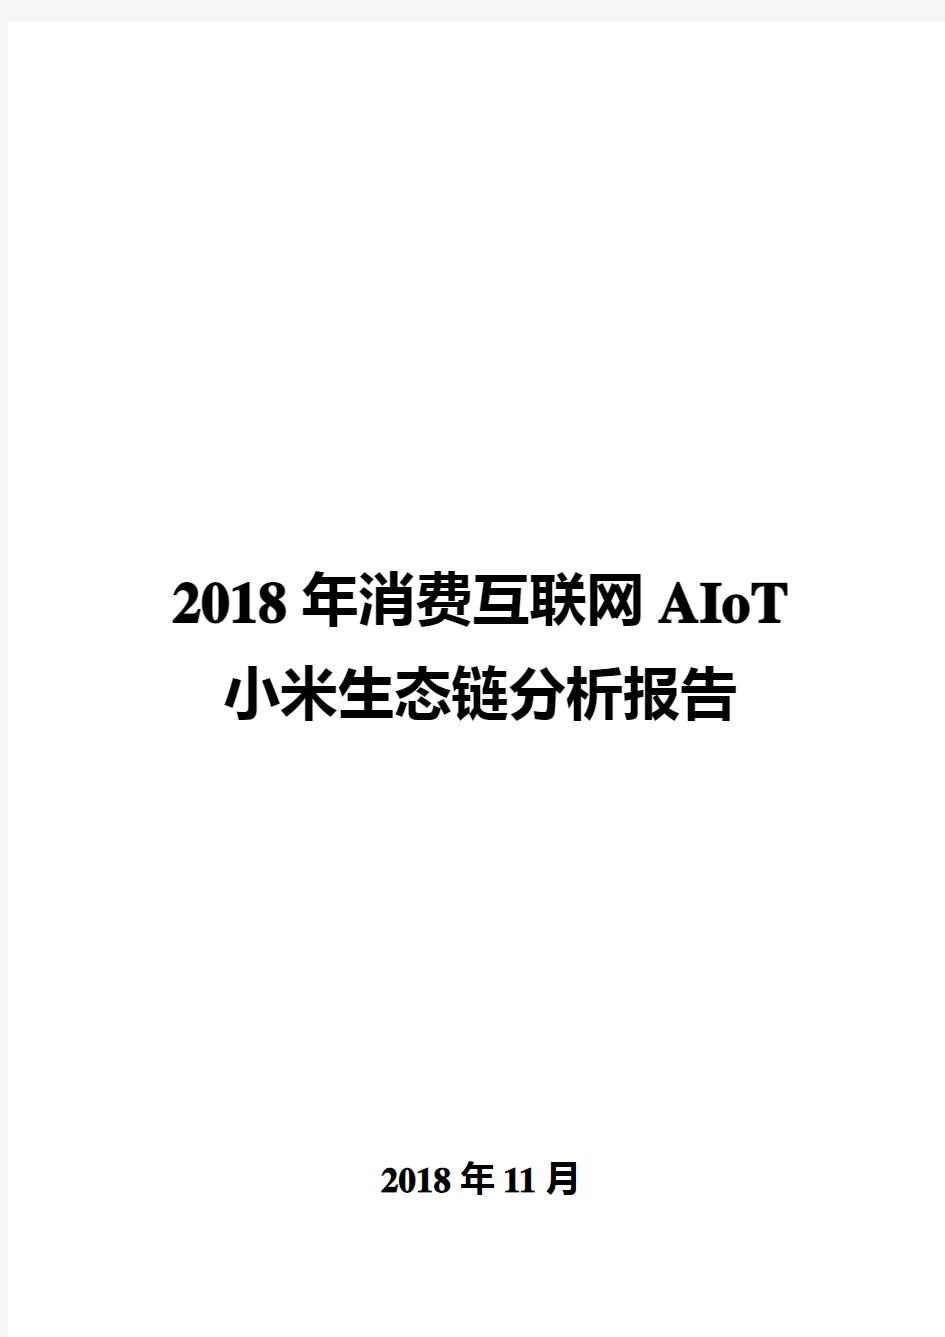 2018年消费互联网AIoT小米生态链分析报告